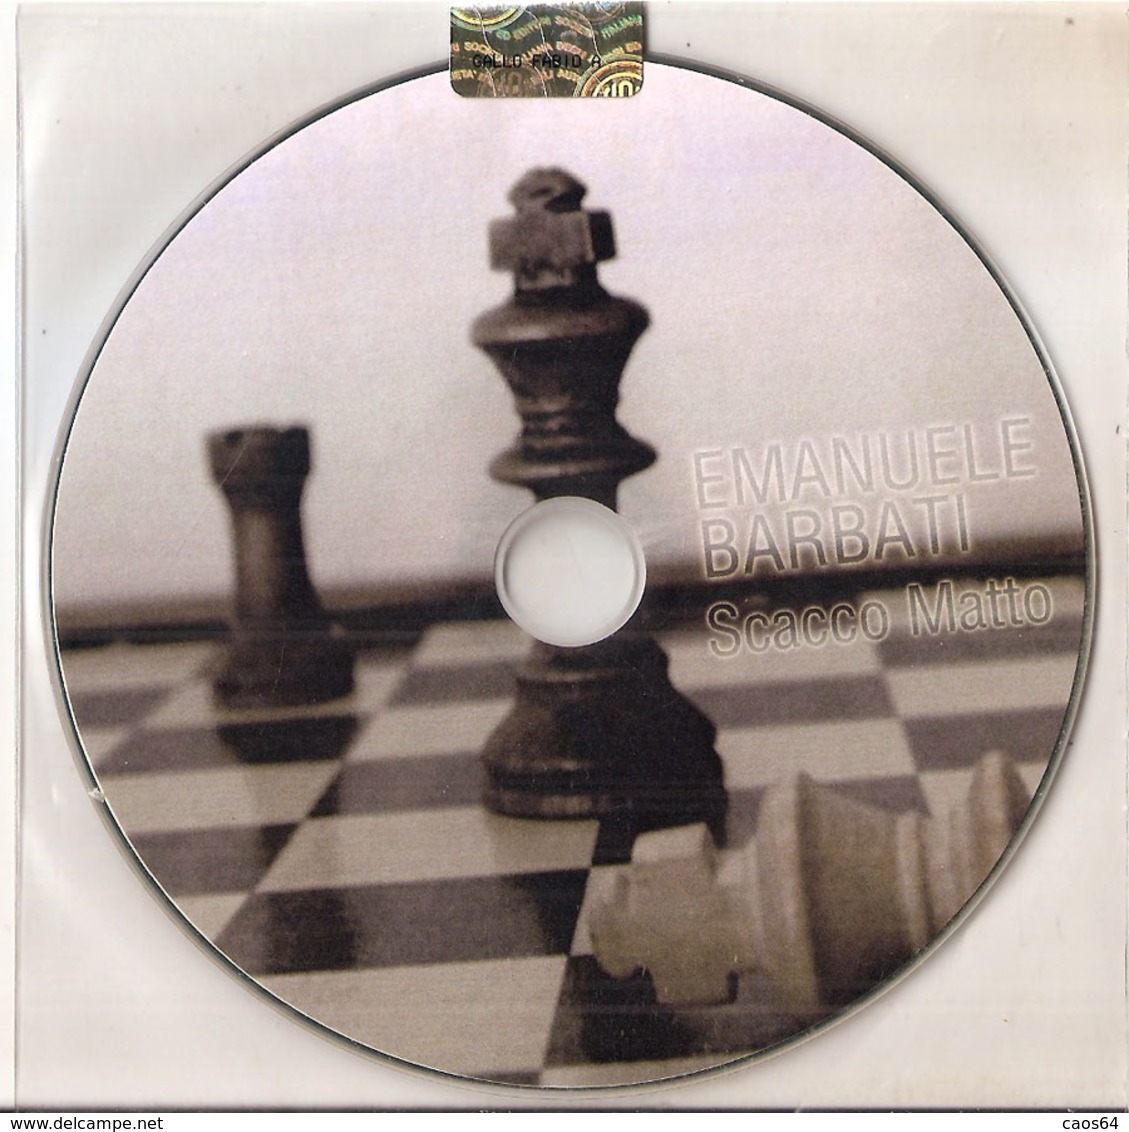 EMANUELE BARBATI SCACCO MATTO PROMO   CD 2013 - Sonstige - Italienische Musik